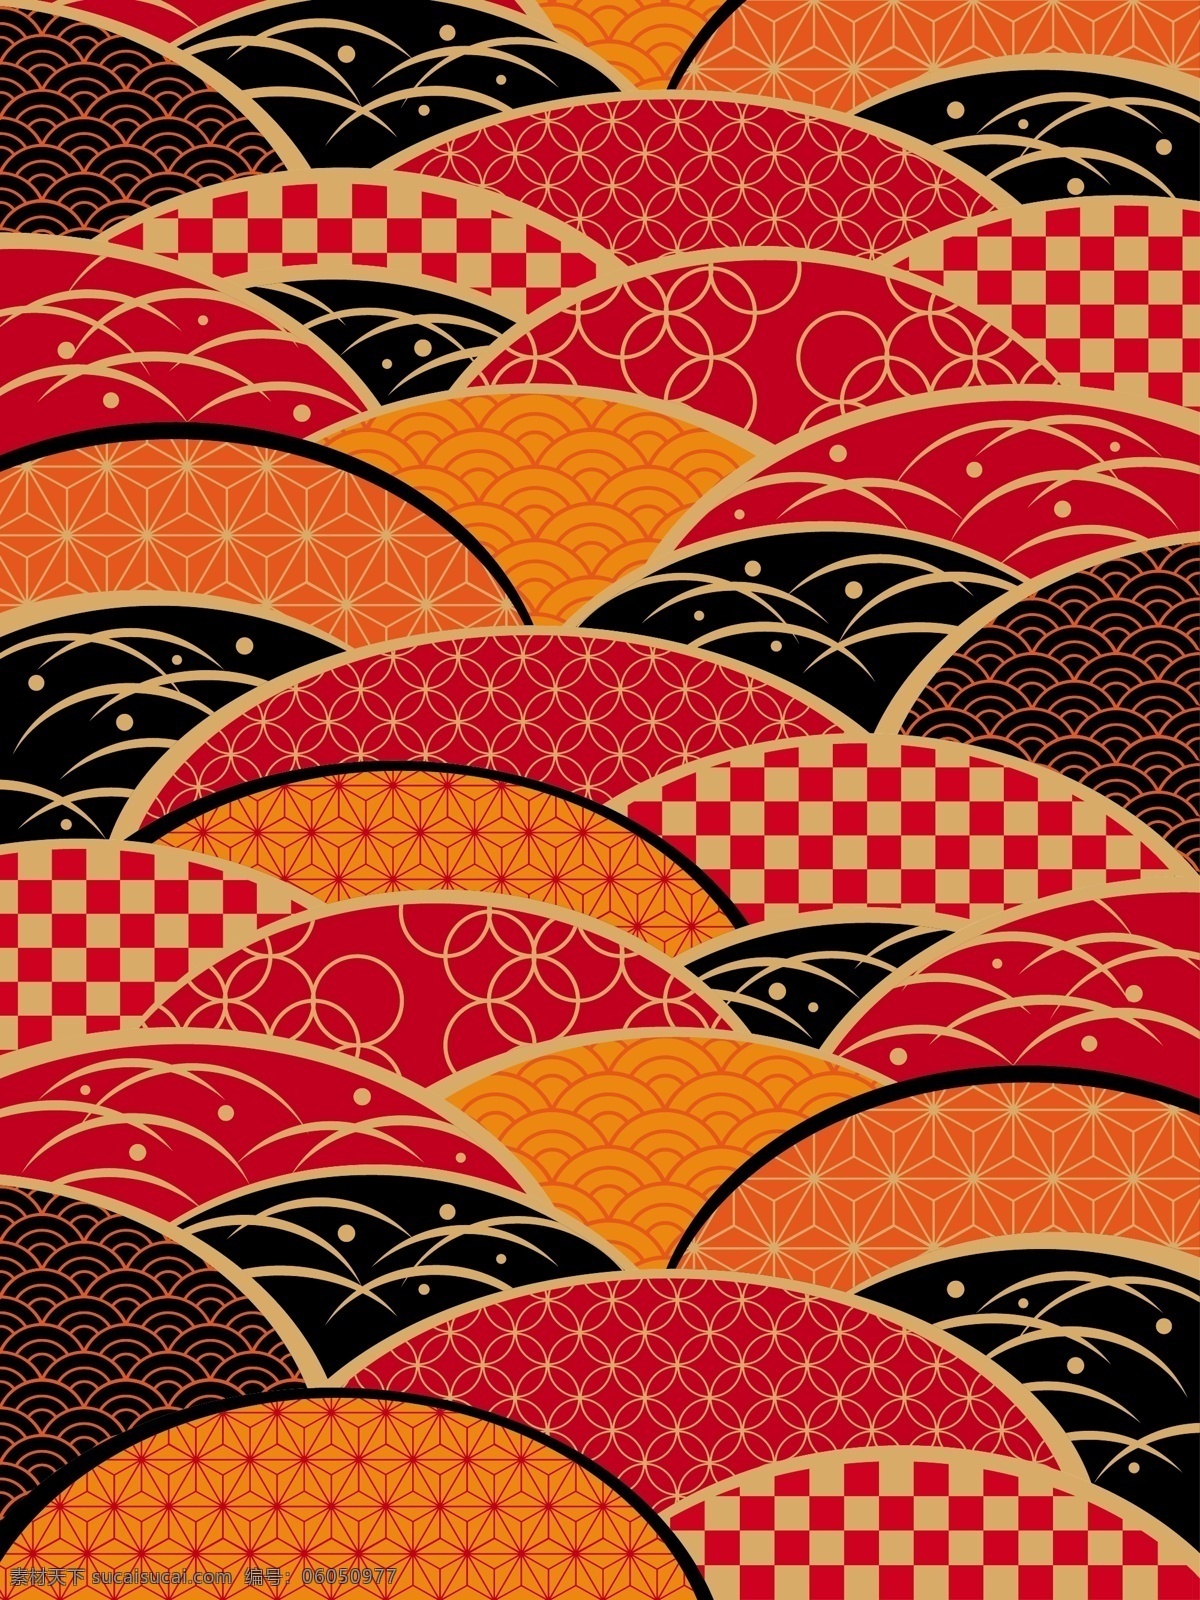 日式图案 民族装饰花纹 日本文化 传统花纹 中国元素 古典 时尚 底纹边框 背景底纹